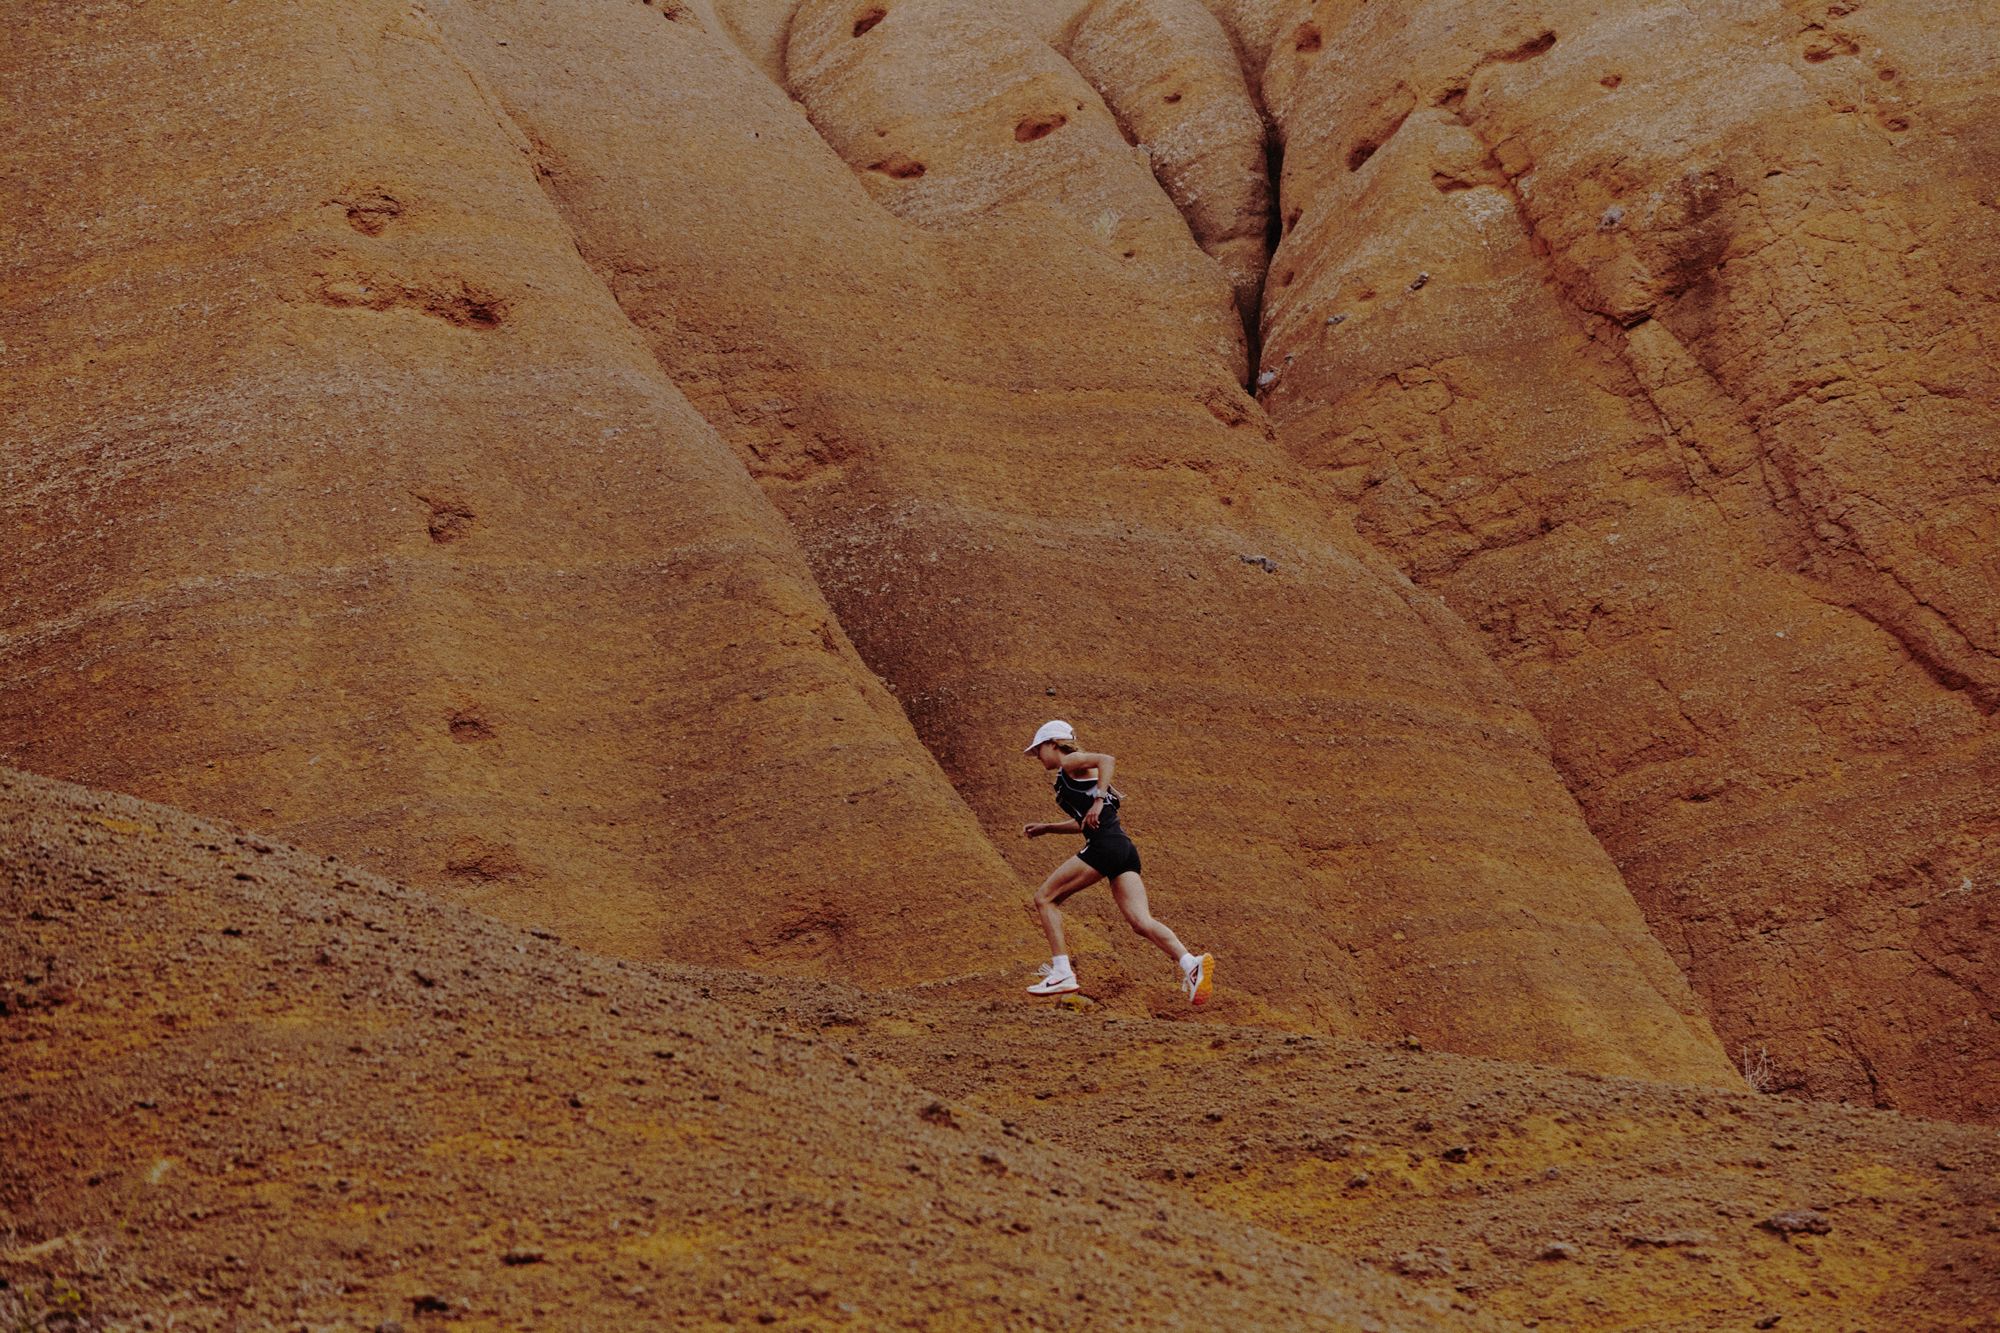 Nike Ultrafly Trail sono le nuove scarpe per correre forte sui trail, dotate di intersuola in ZoomX e di piastra in carbonio